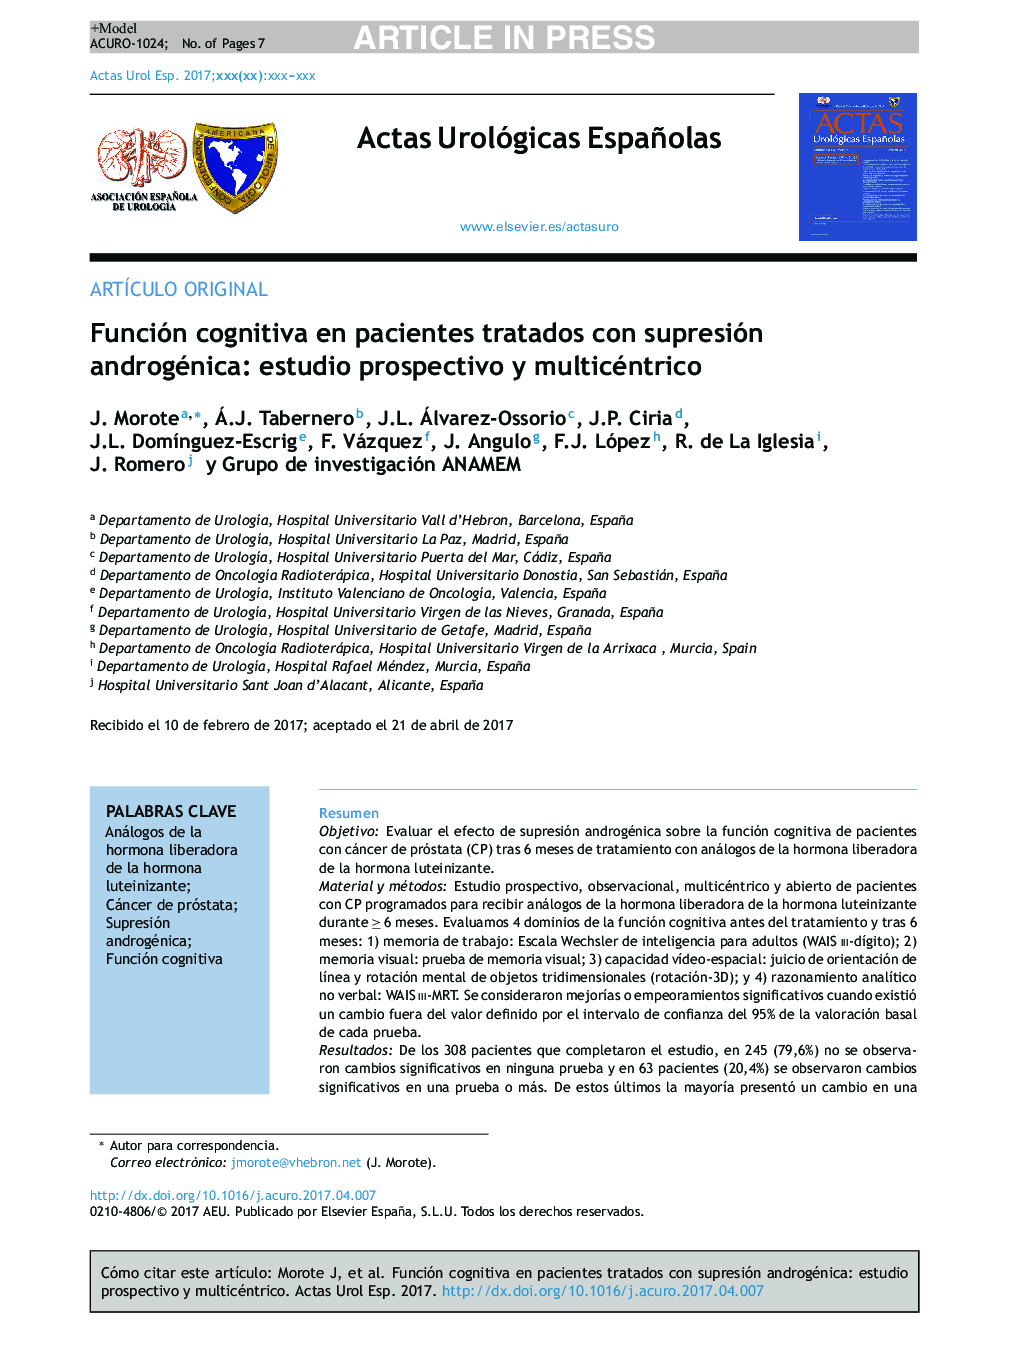 Función cognitiva en pacientes tratados con supresión androgénica: estudio prospectivo y multicéntrico